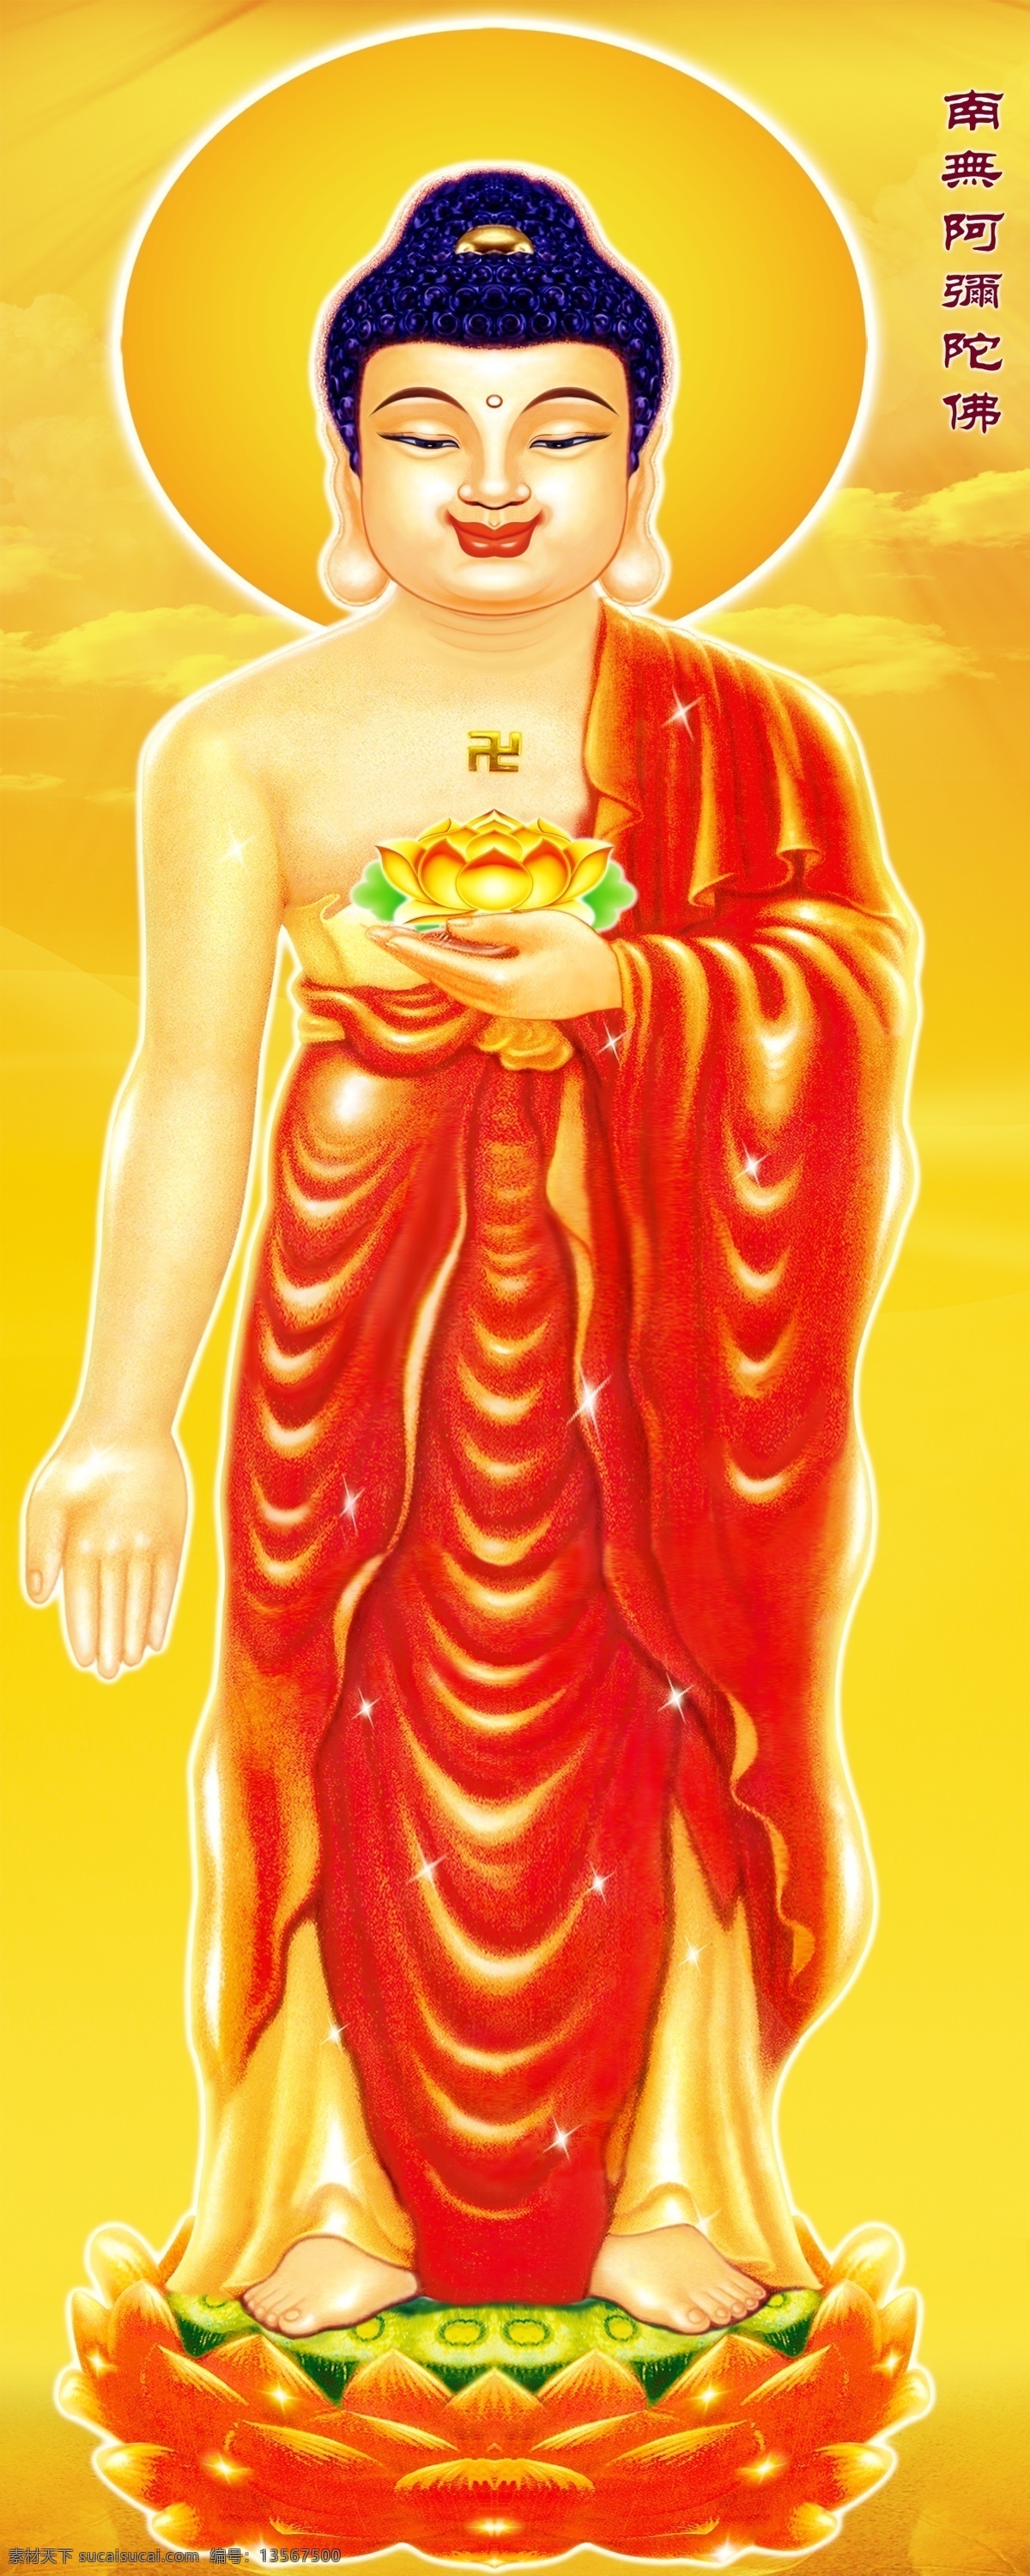 阿弥陀佛 西方三圣 极乐世界 佛教 莲花 金黄色背景 古典 传统 佛像